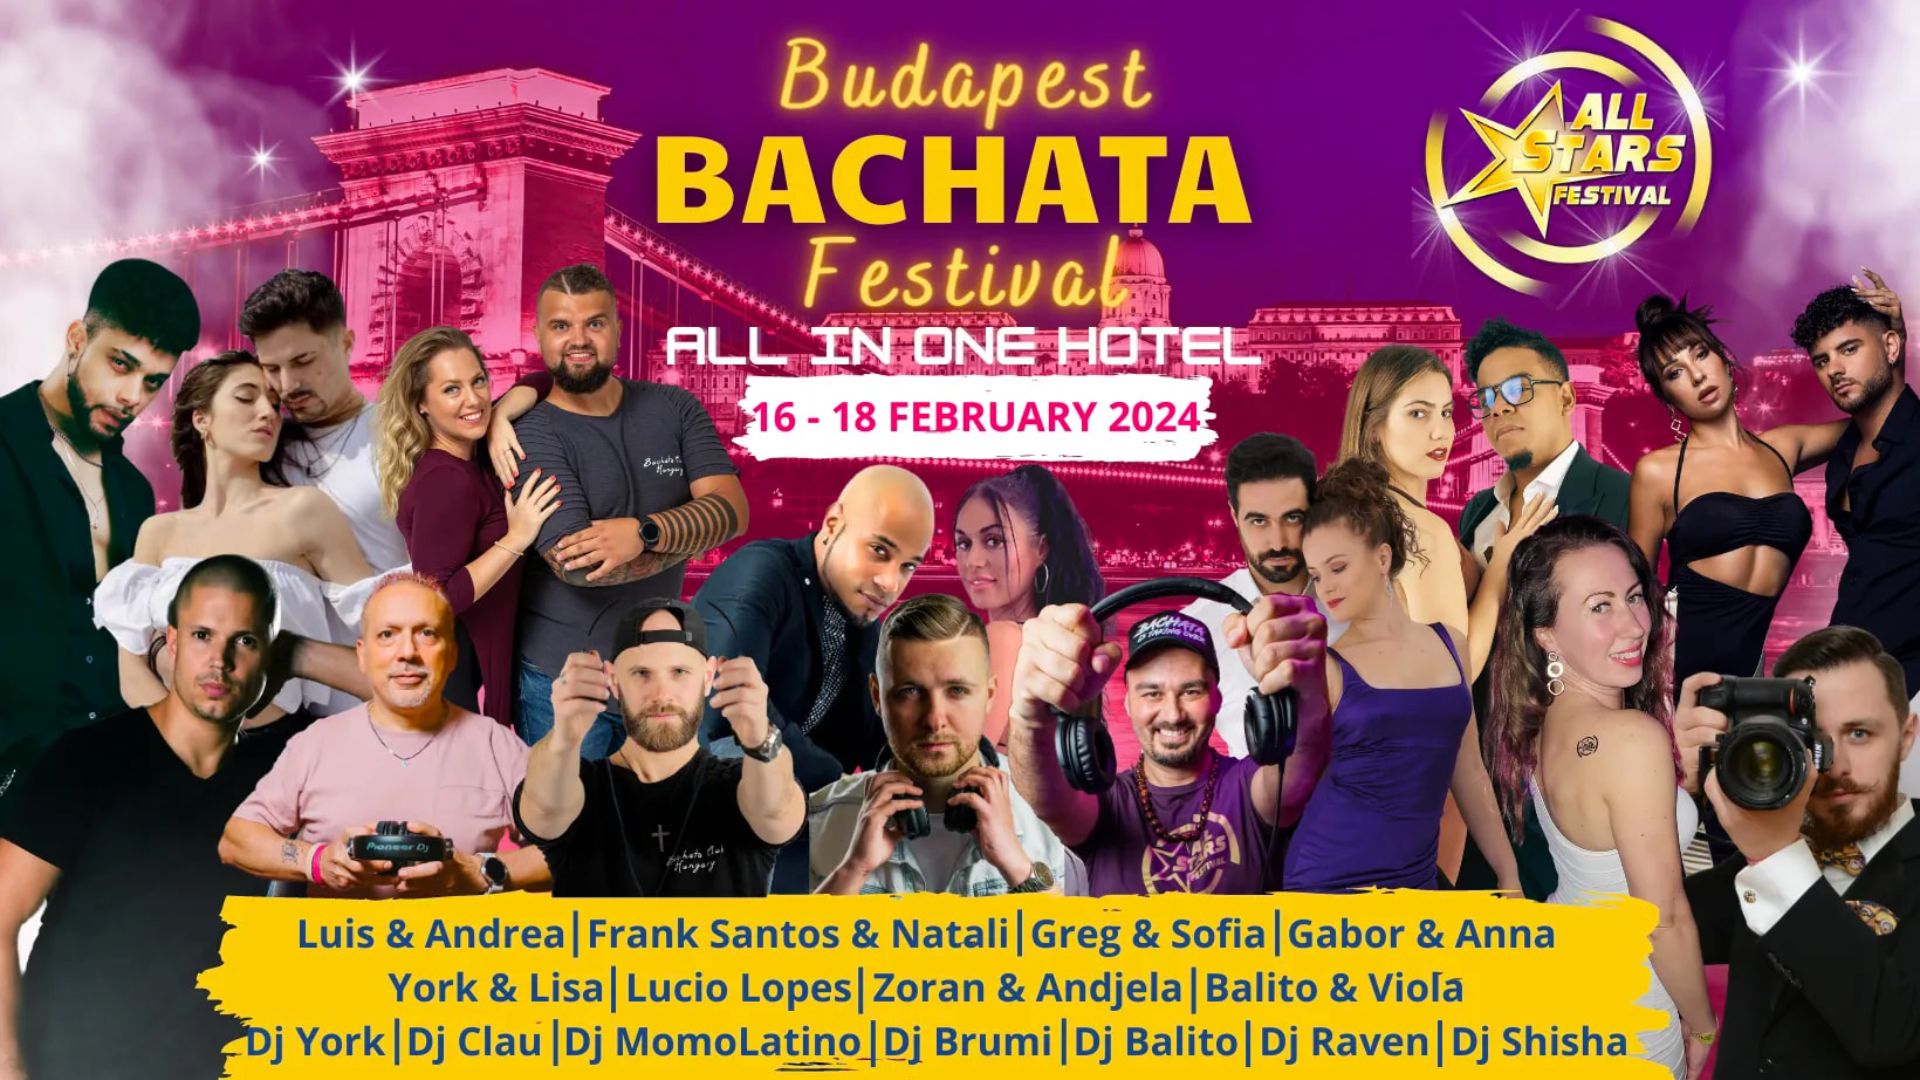 All Stars Budapest Bachata Festival 2024 bachataloves.me the best